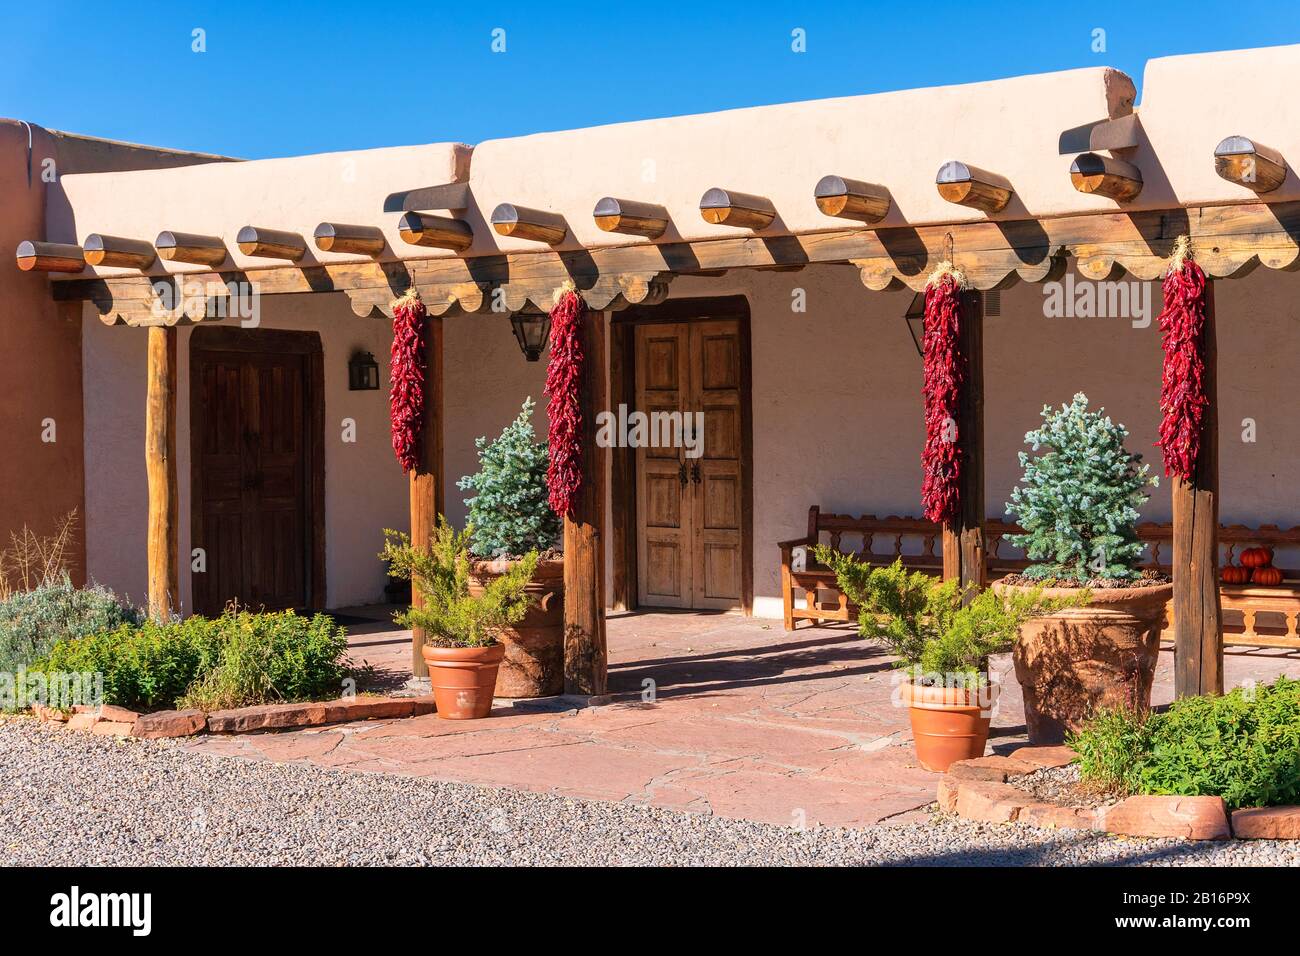 Pueblo style adobe architecture maison avec ritras (piments rouges séchés) à Santa Fe, Nouveau Mexique, États-Unis Banque D'Images